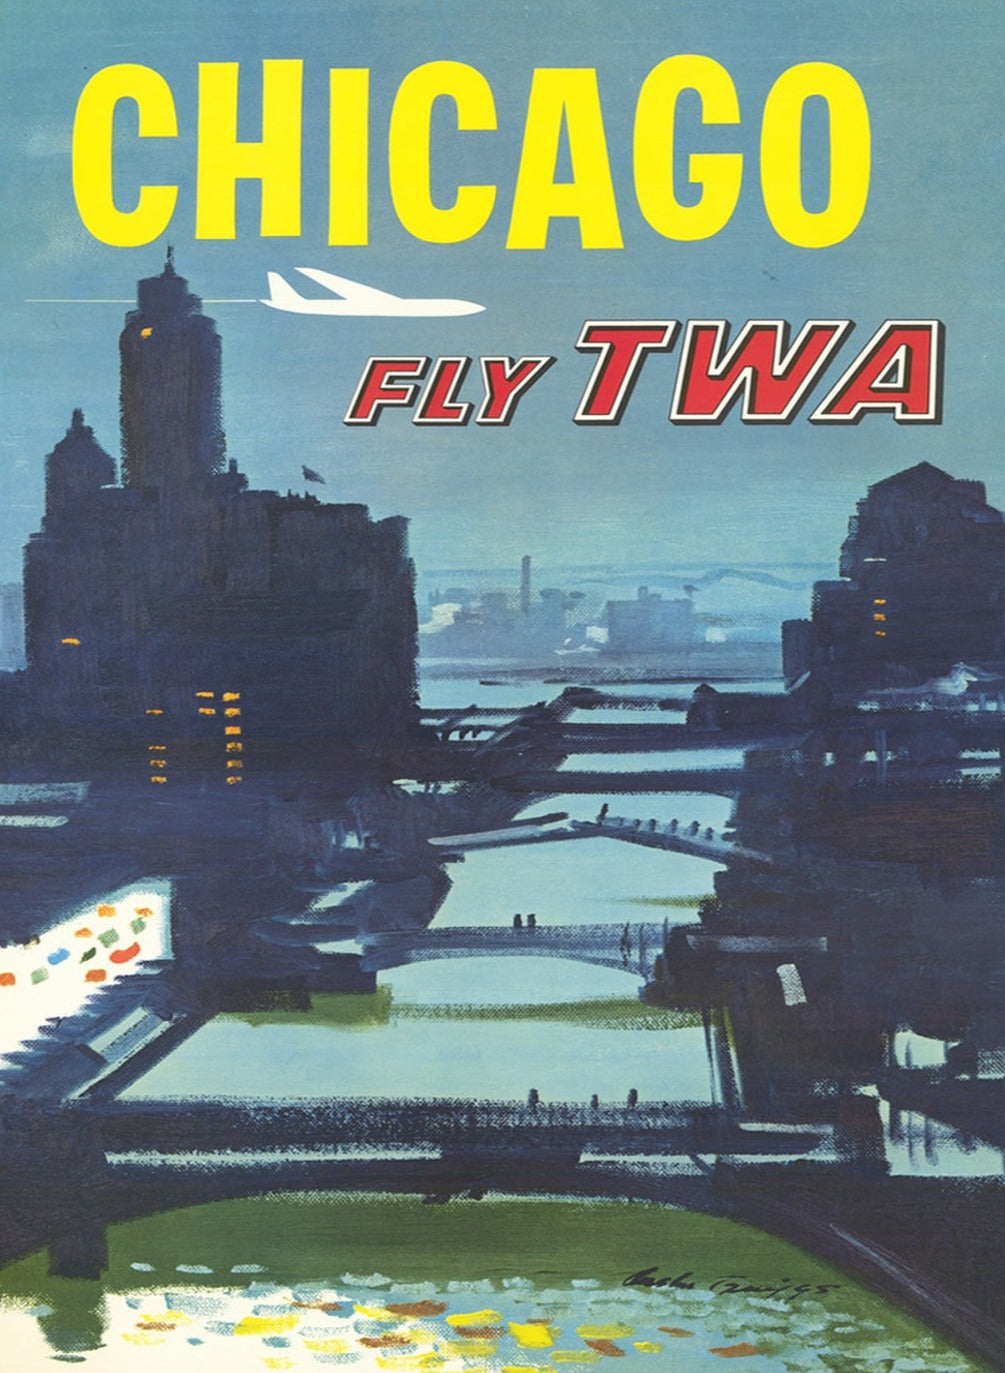 TWA - Chicago